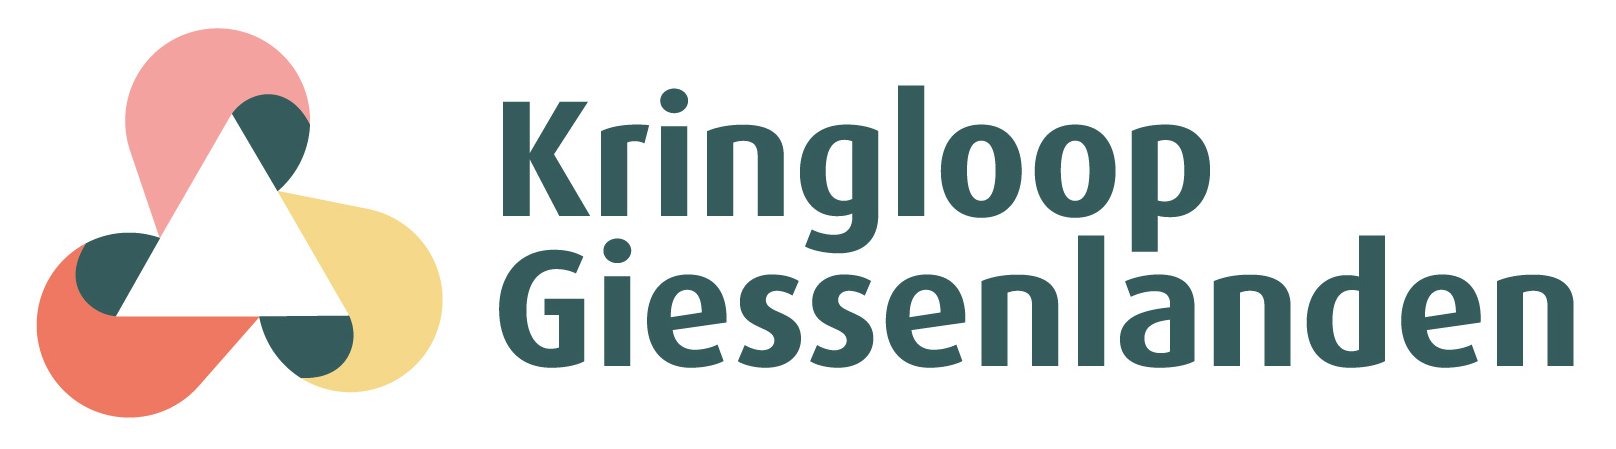 Logo_kringloop giessenlanden